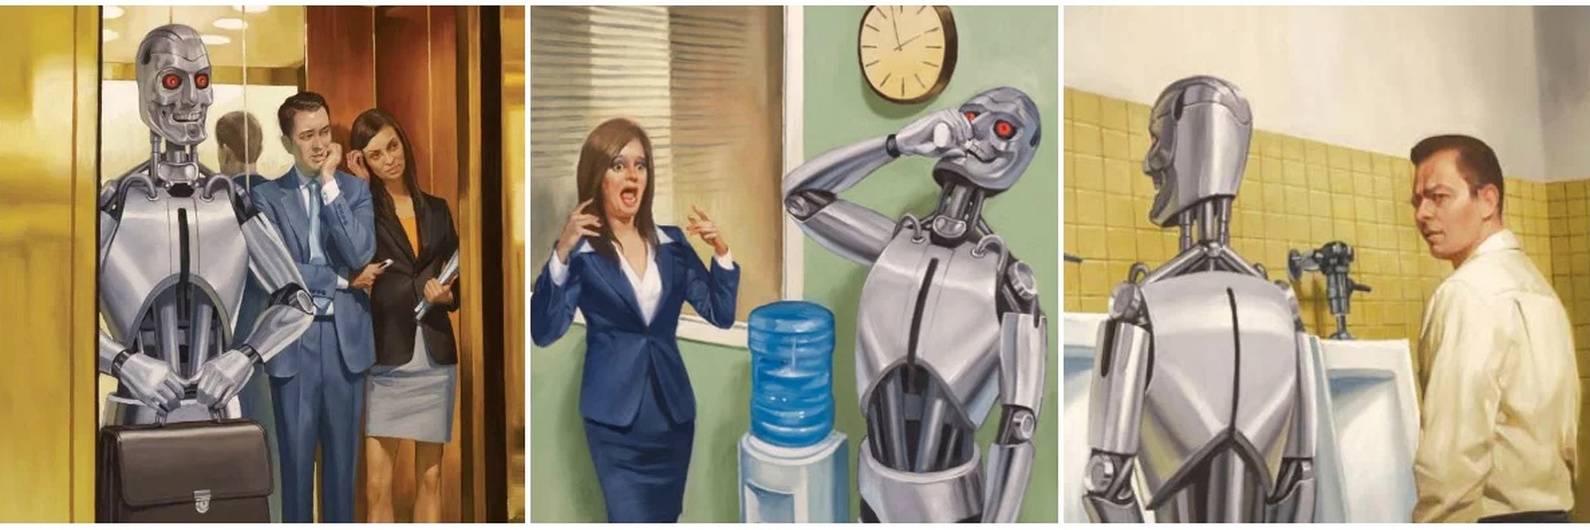 В будущем люди не будут работать. Роботы вместо людей. Превращение человека в робота. Роботы заменят людей. Искусственный интеллект против человека.